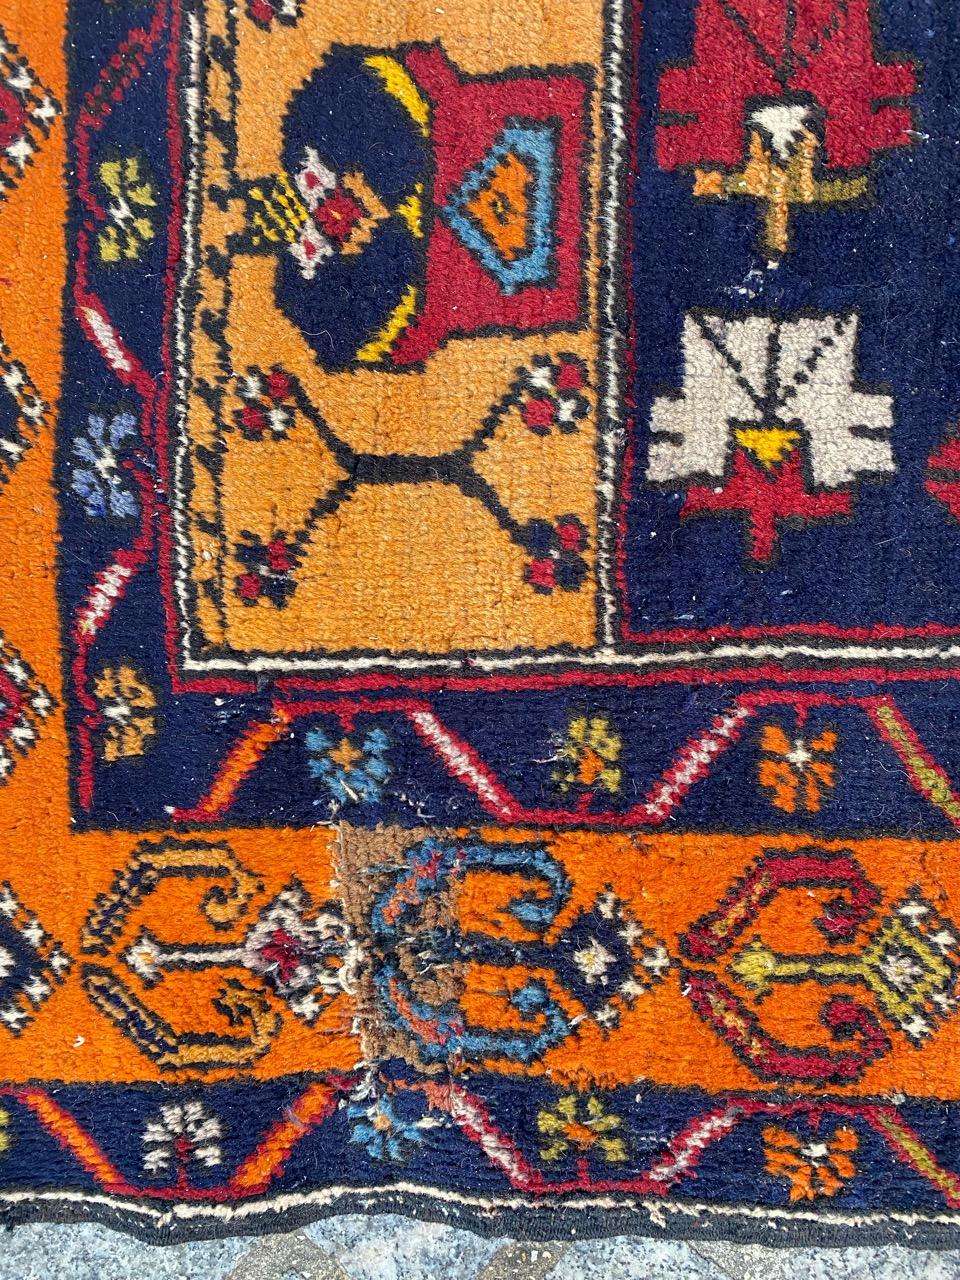 Schöner türkischer Teppich aus der Mitte des Jahrhunderts mit schönem geometrischem Muster und schönen Farben, komplett handgeknüpft mit Wollsamt auf Wollfond.

✨✨✨
